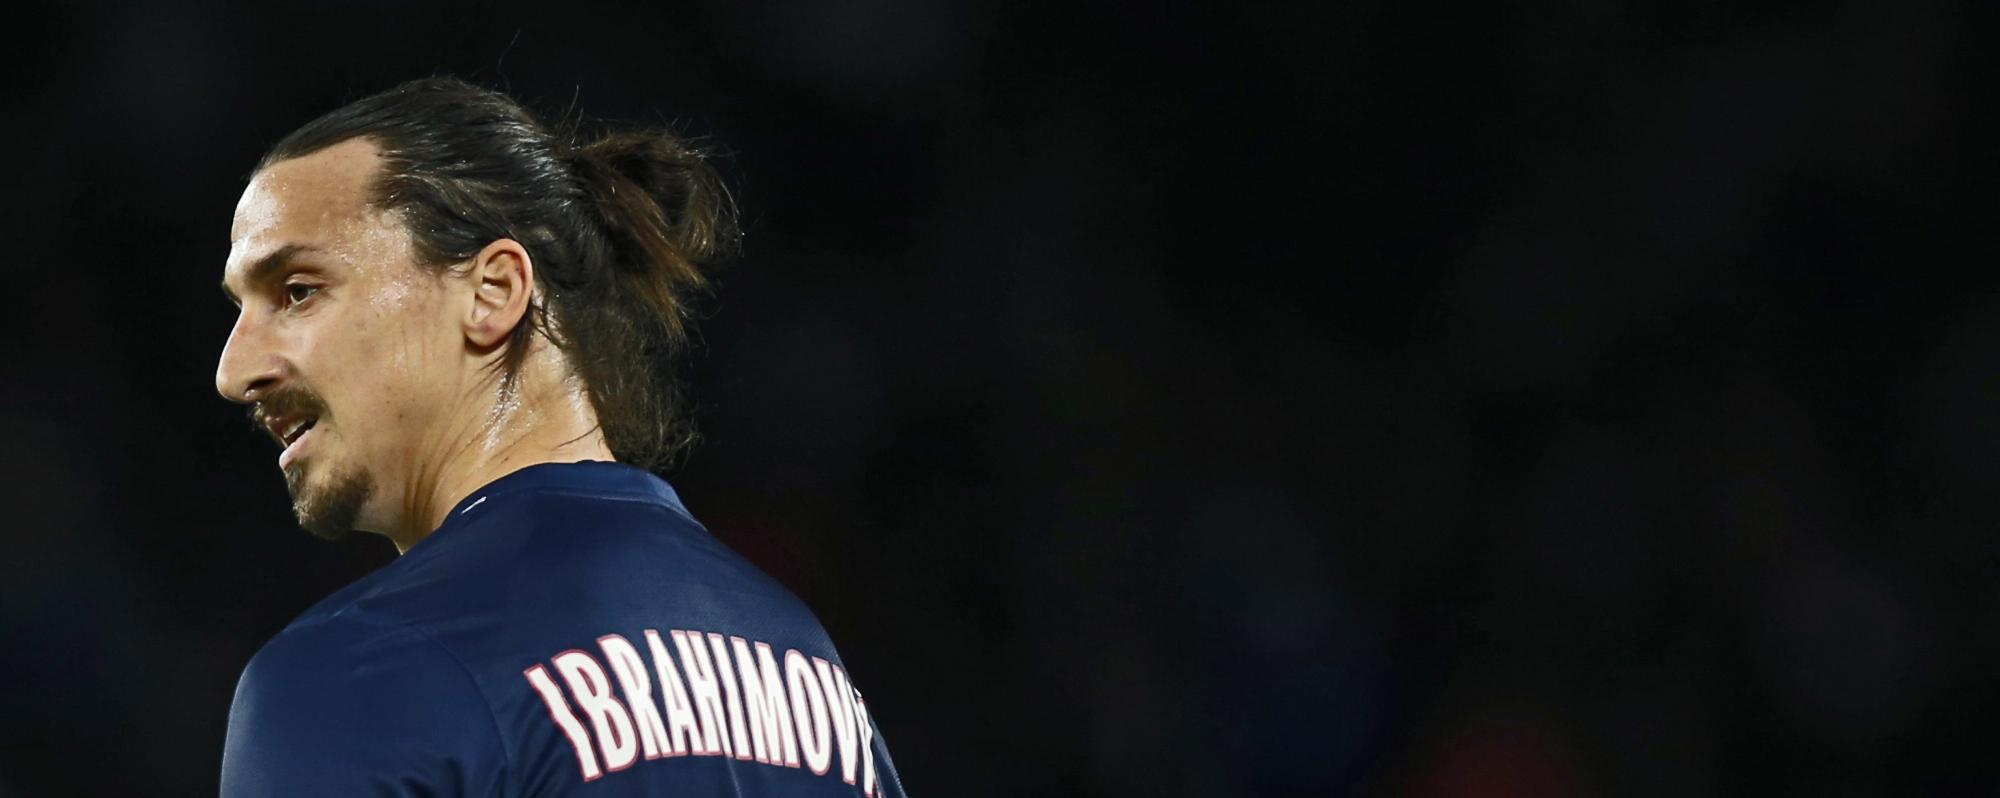 La escalofriante cifra con que el fútbol chino quiere tentar a Zlatan Ibrahimovic